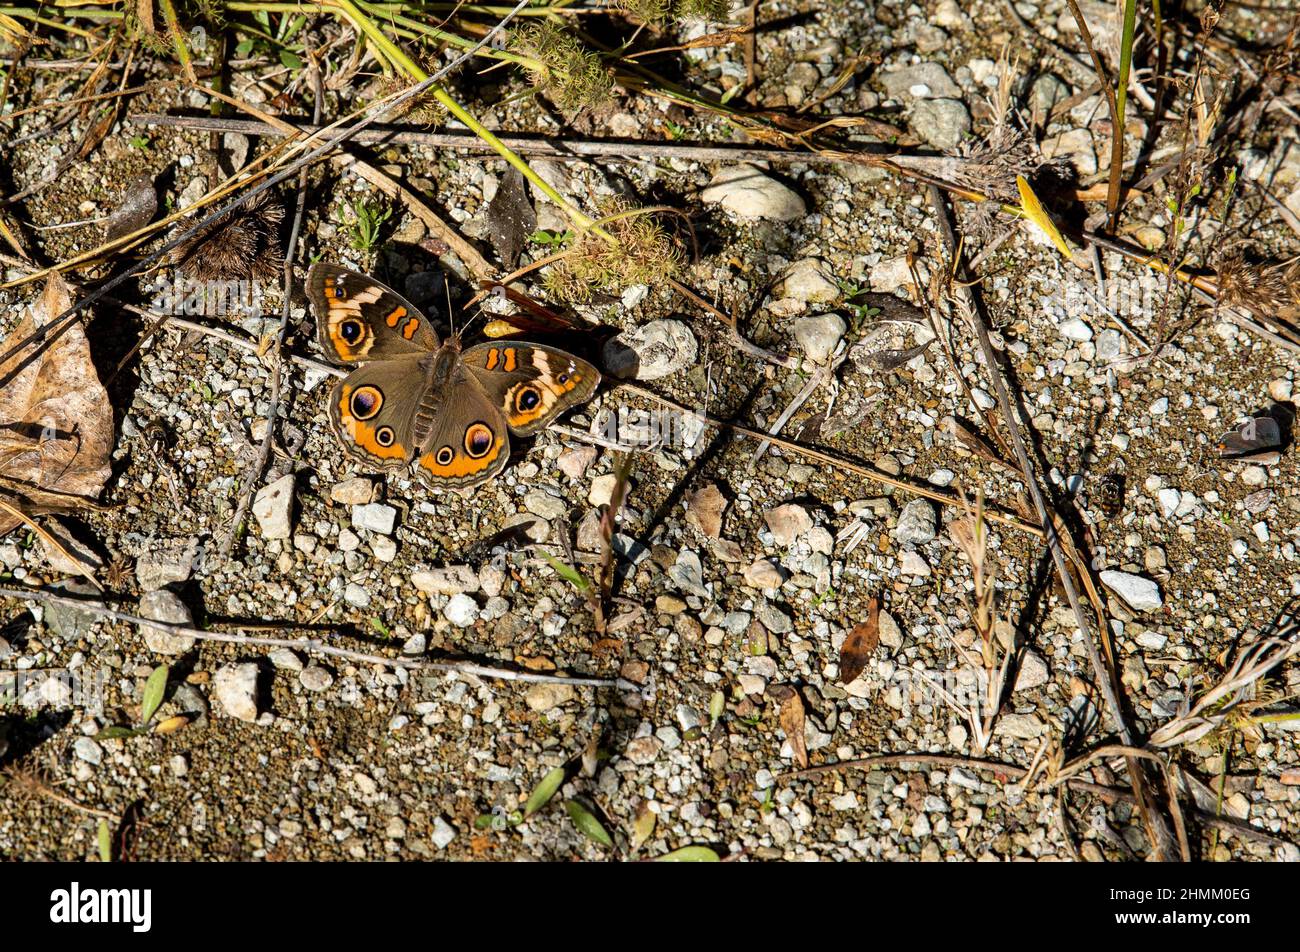 Ein gewöhnlicher Buckeye-Schmetterling nippt Salze aus den salzhaltigen Böden in der Nähe einer Wüstenquelle. Stockfoto